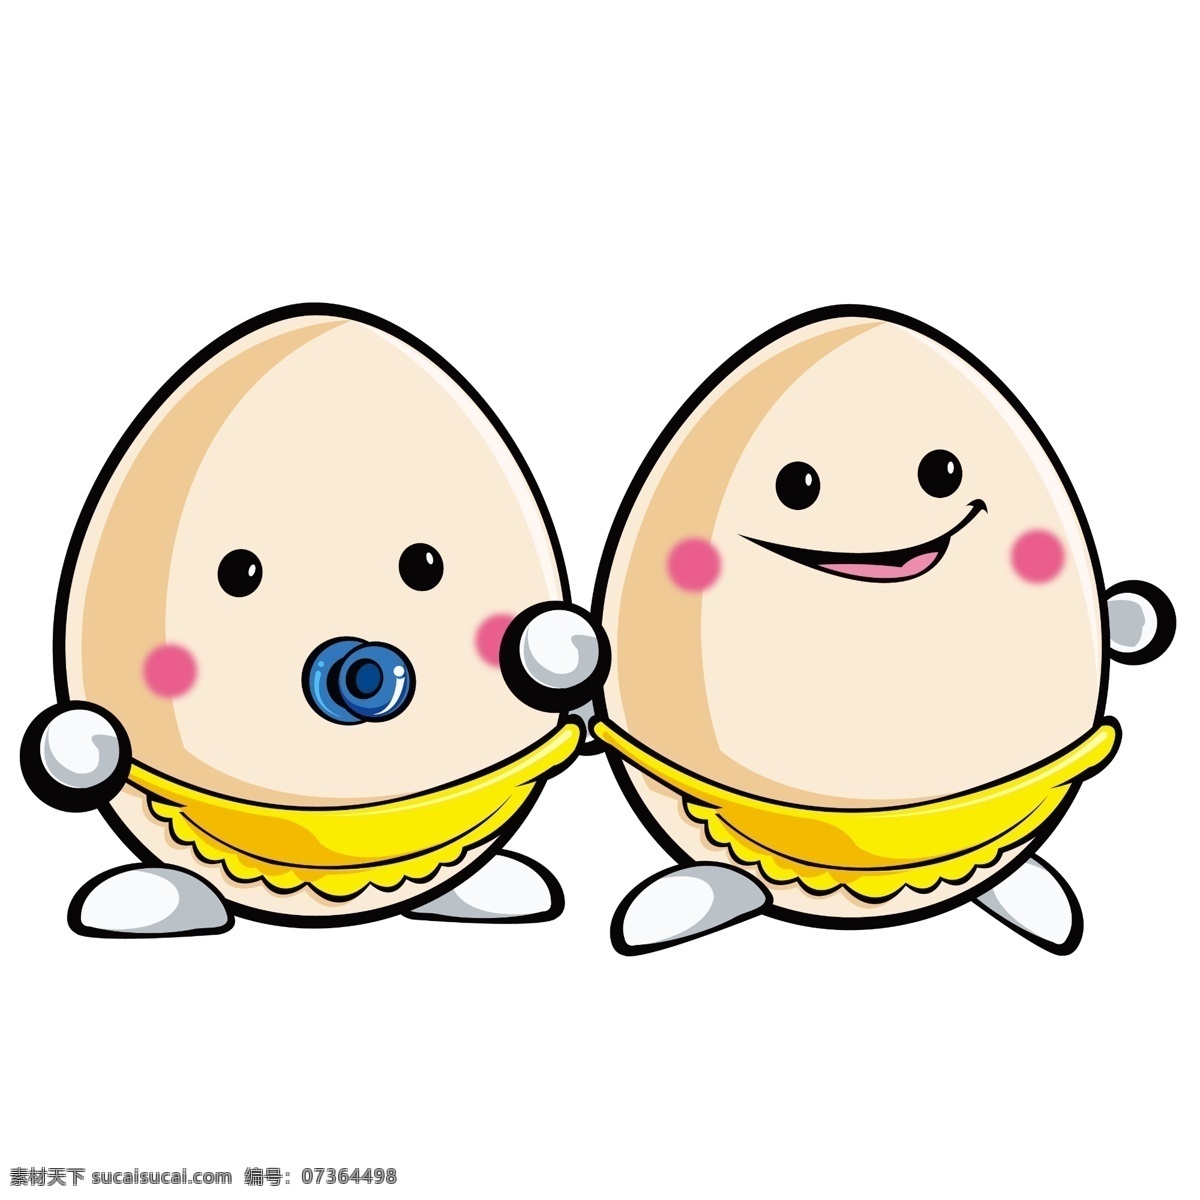 卡通鸡蛋 鸡蛋素材 鸡蛋卡通人物 卡通鸡蛋人物